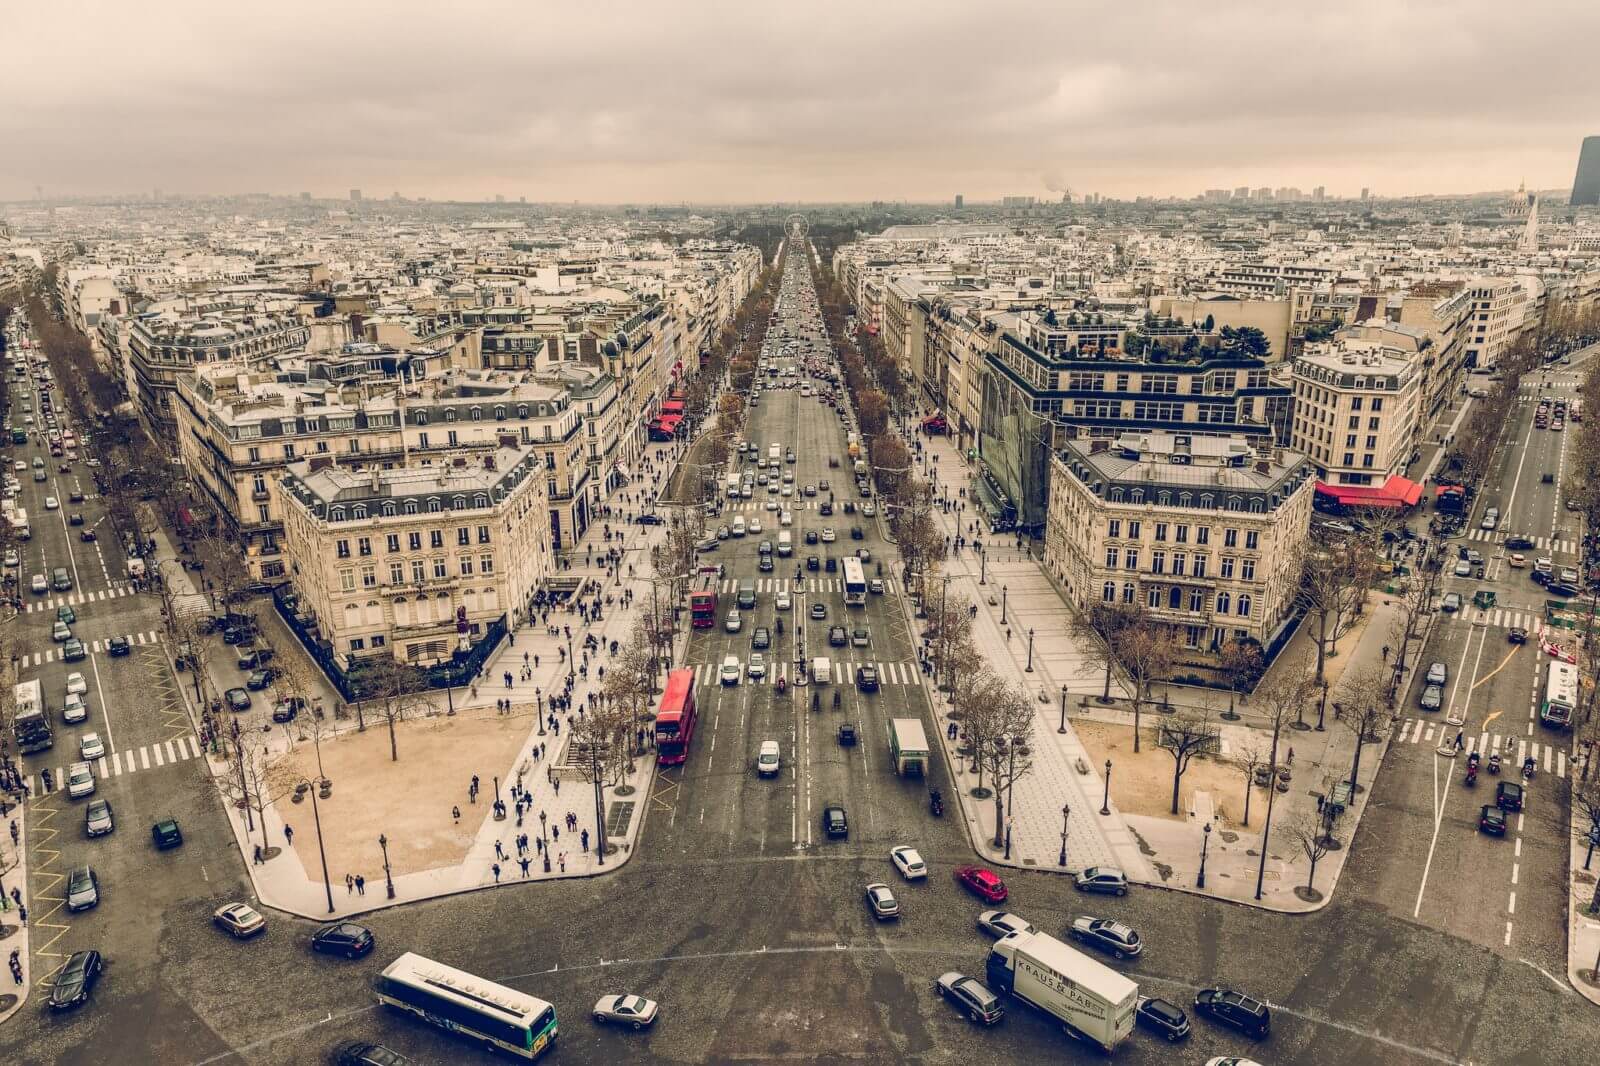 Zakaz wjazdu diesli do Paryża. Fot. Chris Chabot||Zakaz diesli w Paryżu. Fot. Juls Boo